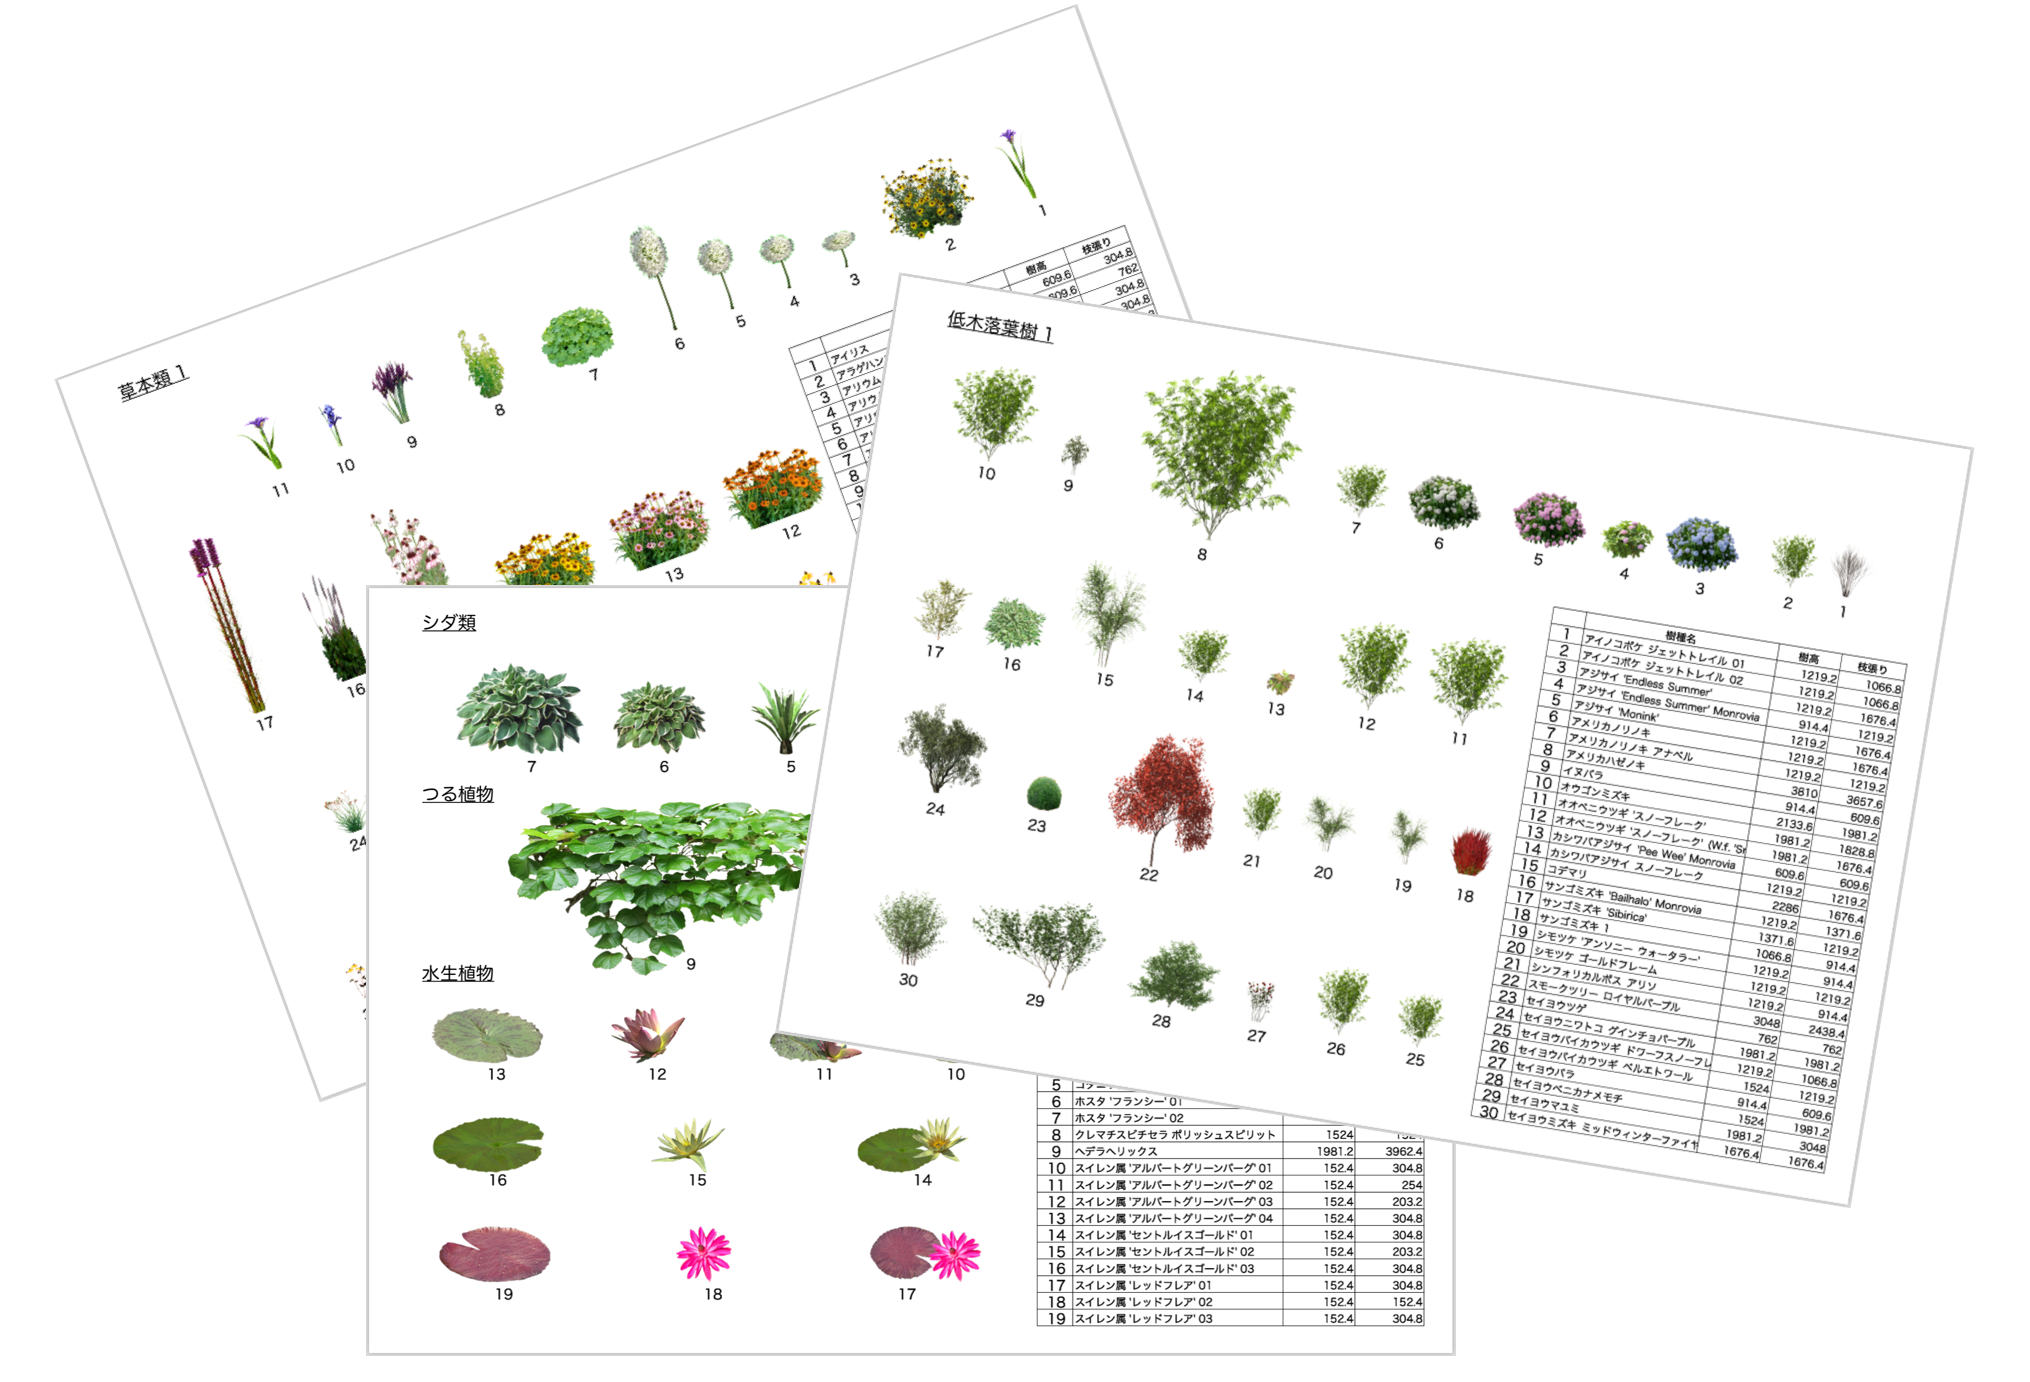 植栽ツールの3D表示一覧 – Vectorworks Design Blog